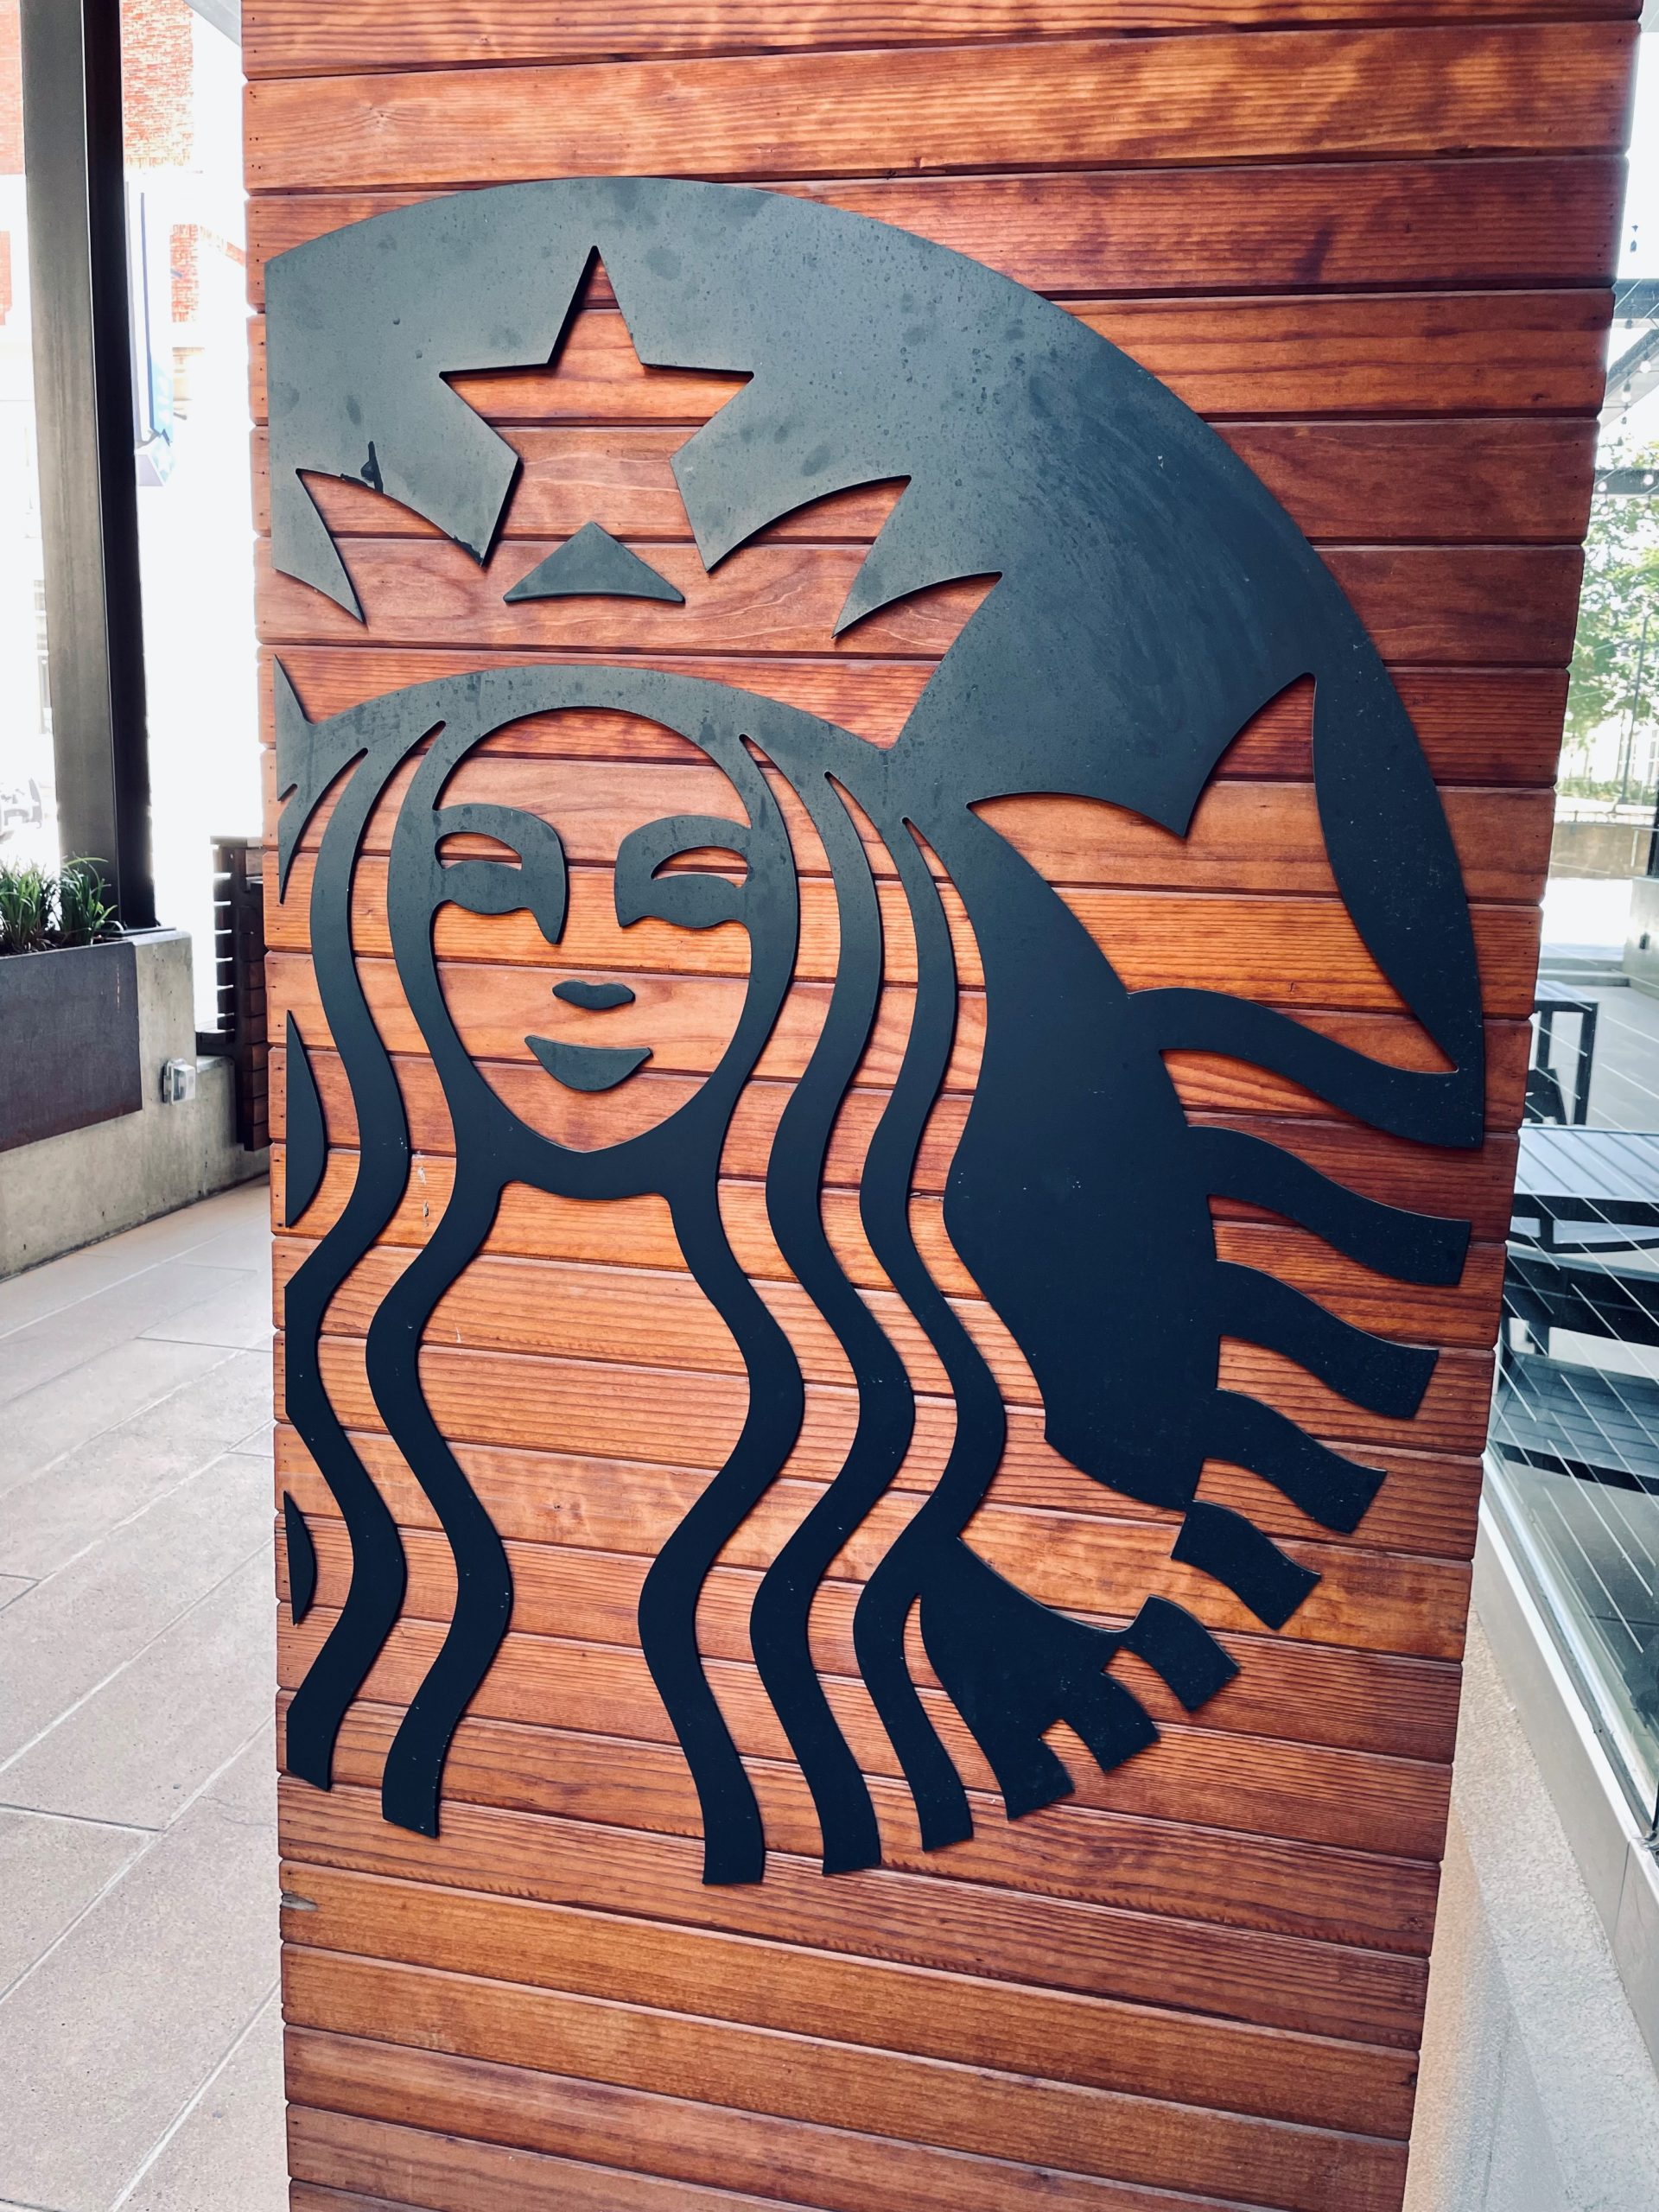 Background image for Starbucks